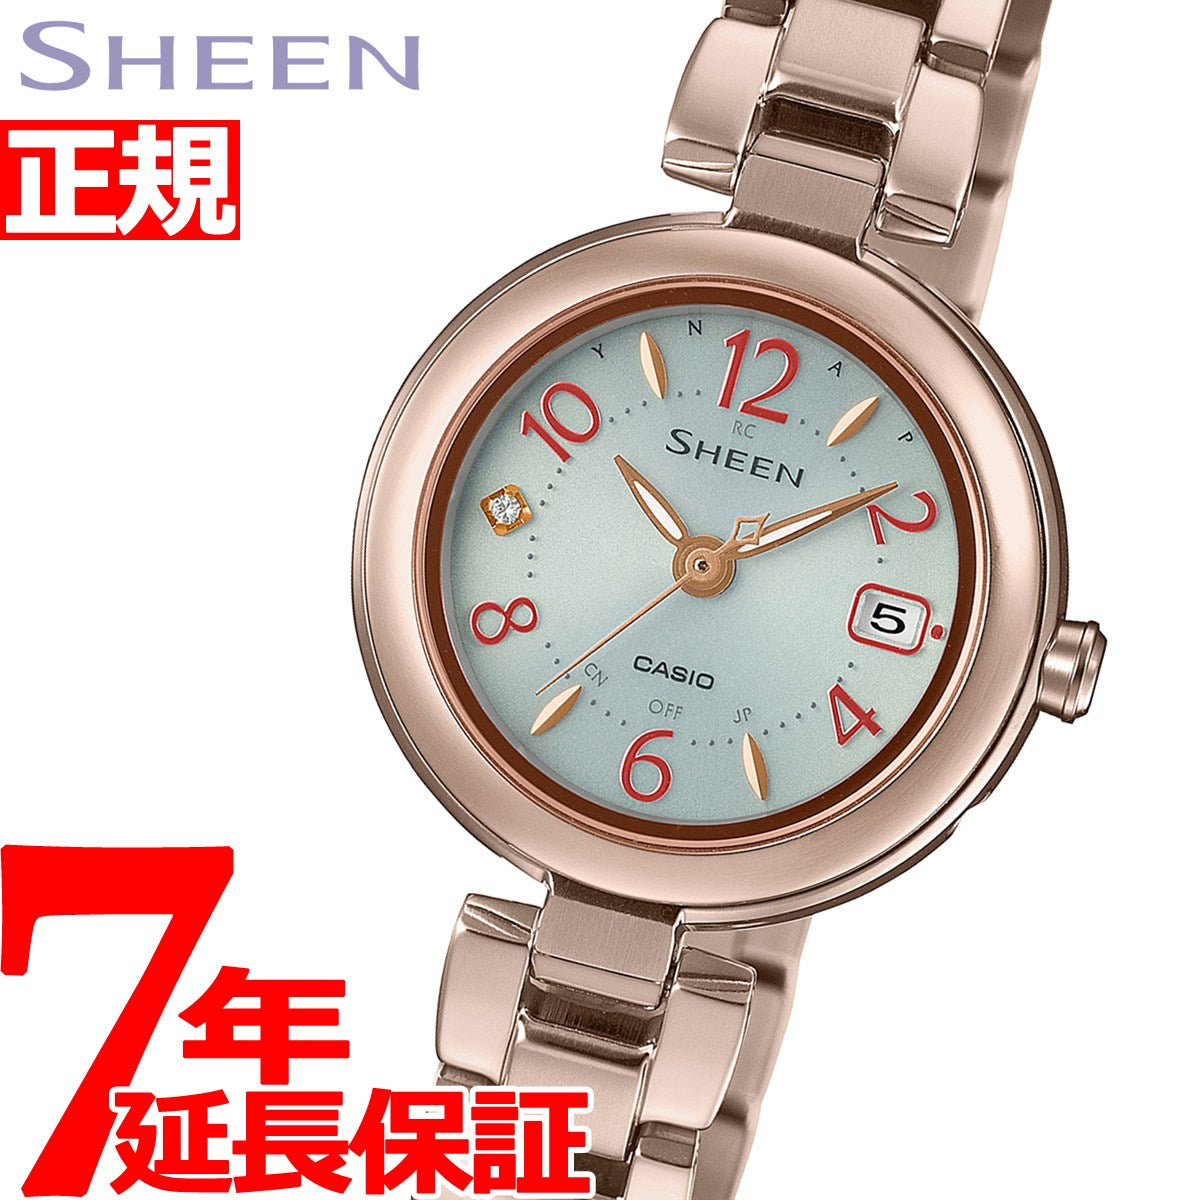 ファッション小物Casio Sheen 腕時計 - 腕時計